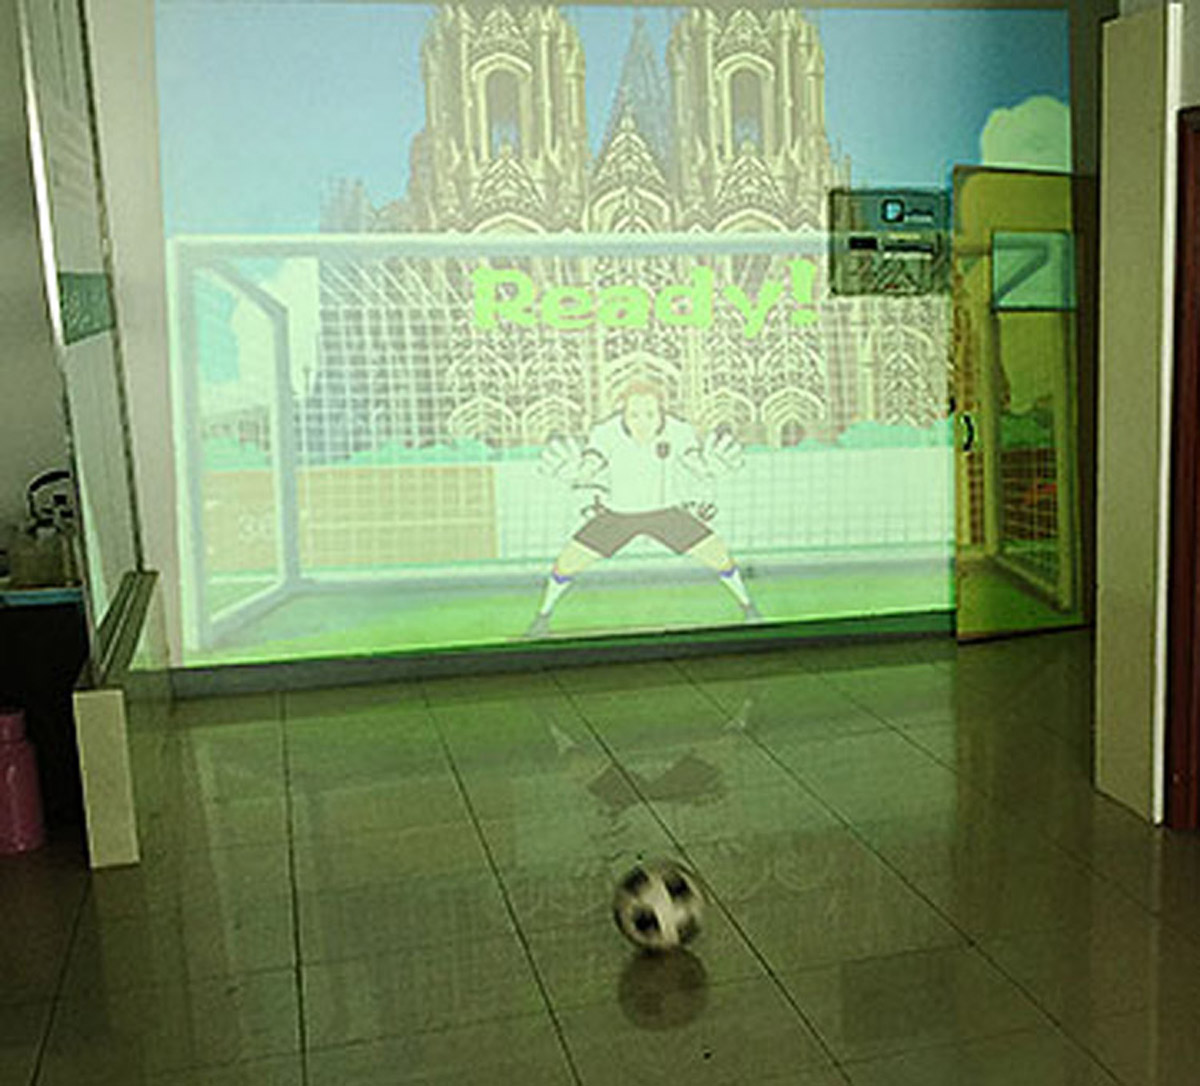 使用体感识别技术的虚拟足球射门.jpg